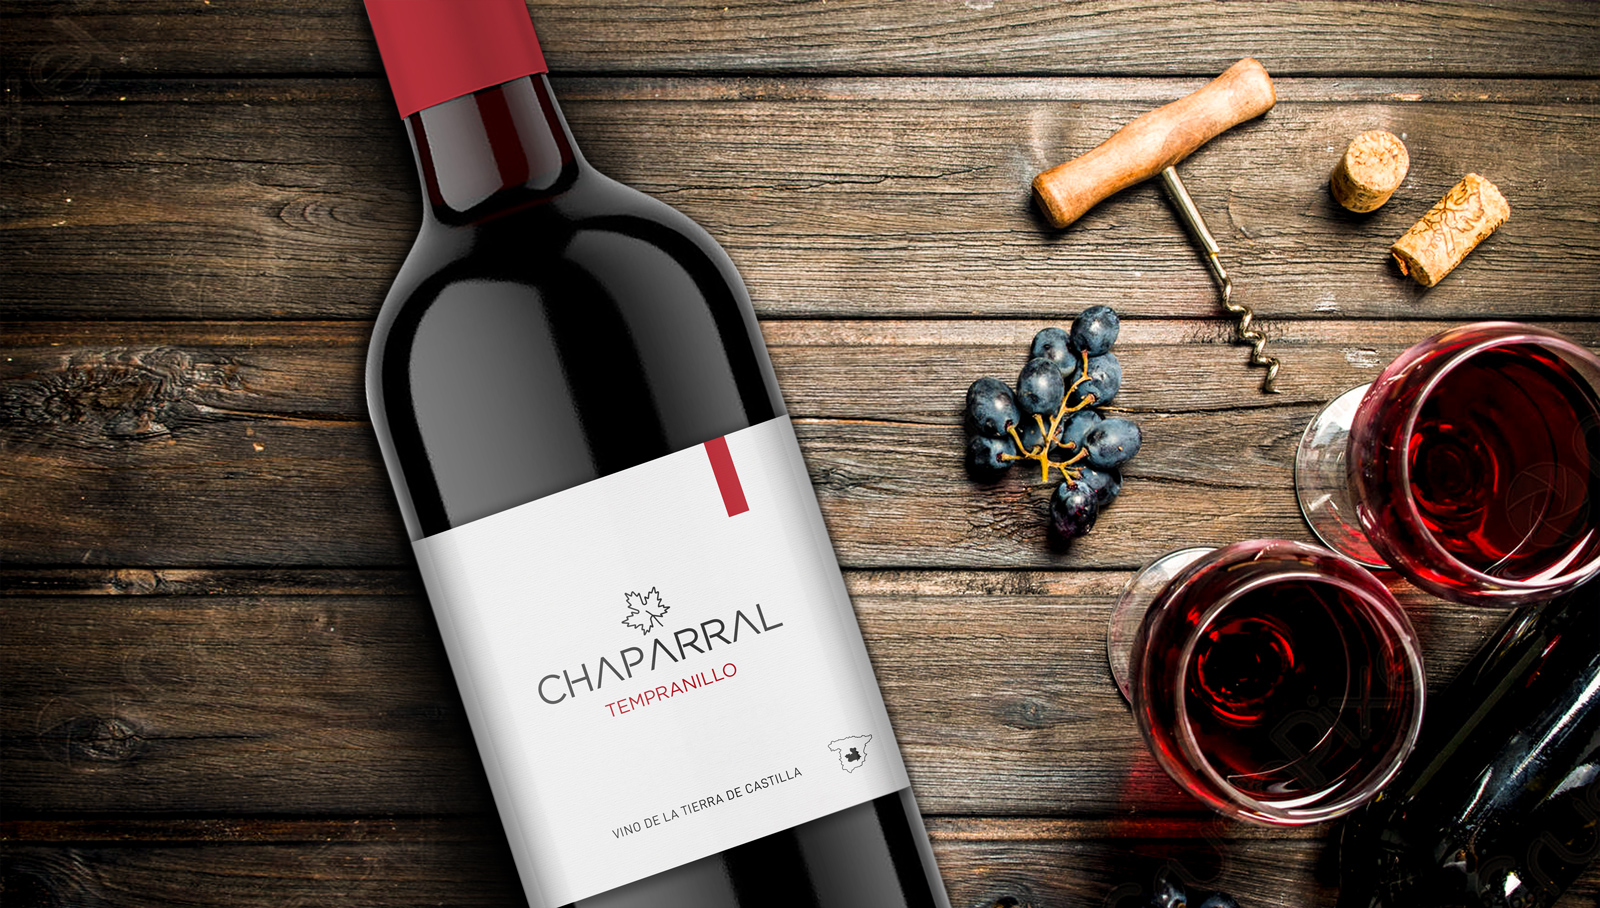 Diseño gráfico y creativo de etiquetas y packaging de vino para CHAPARRAL de Bodegas Taray